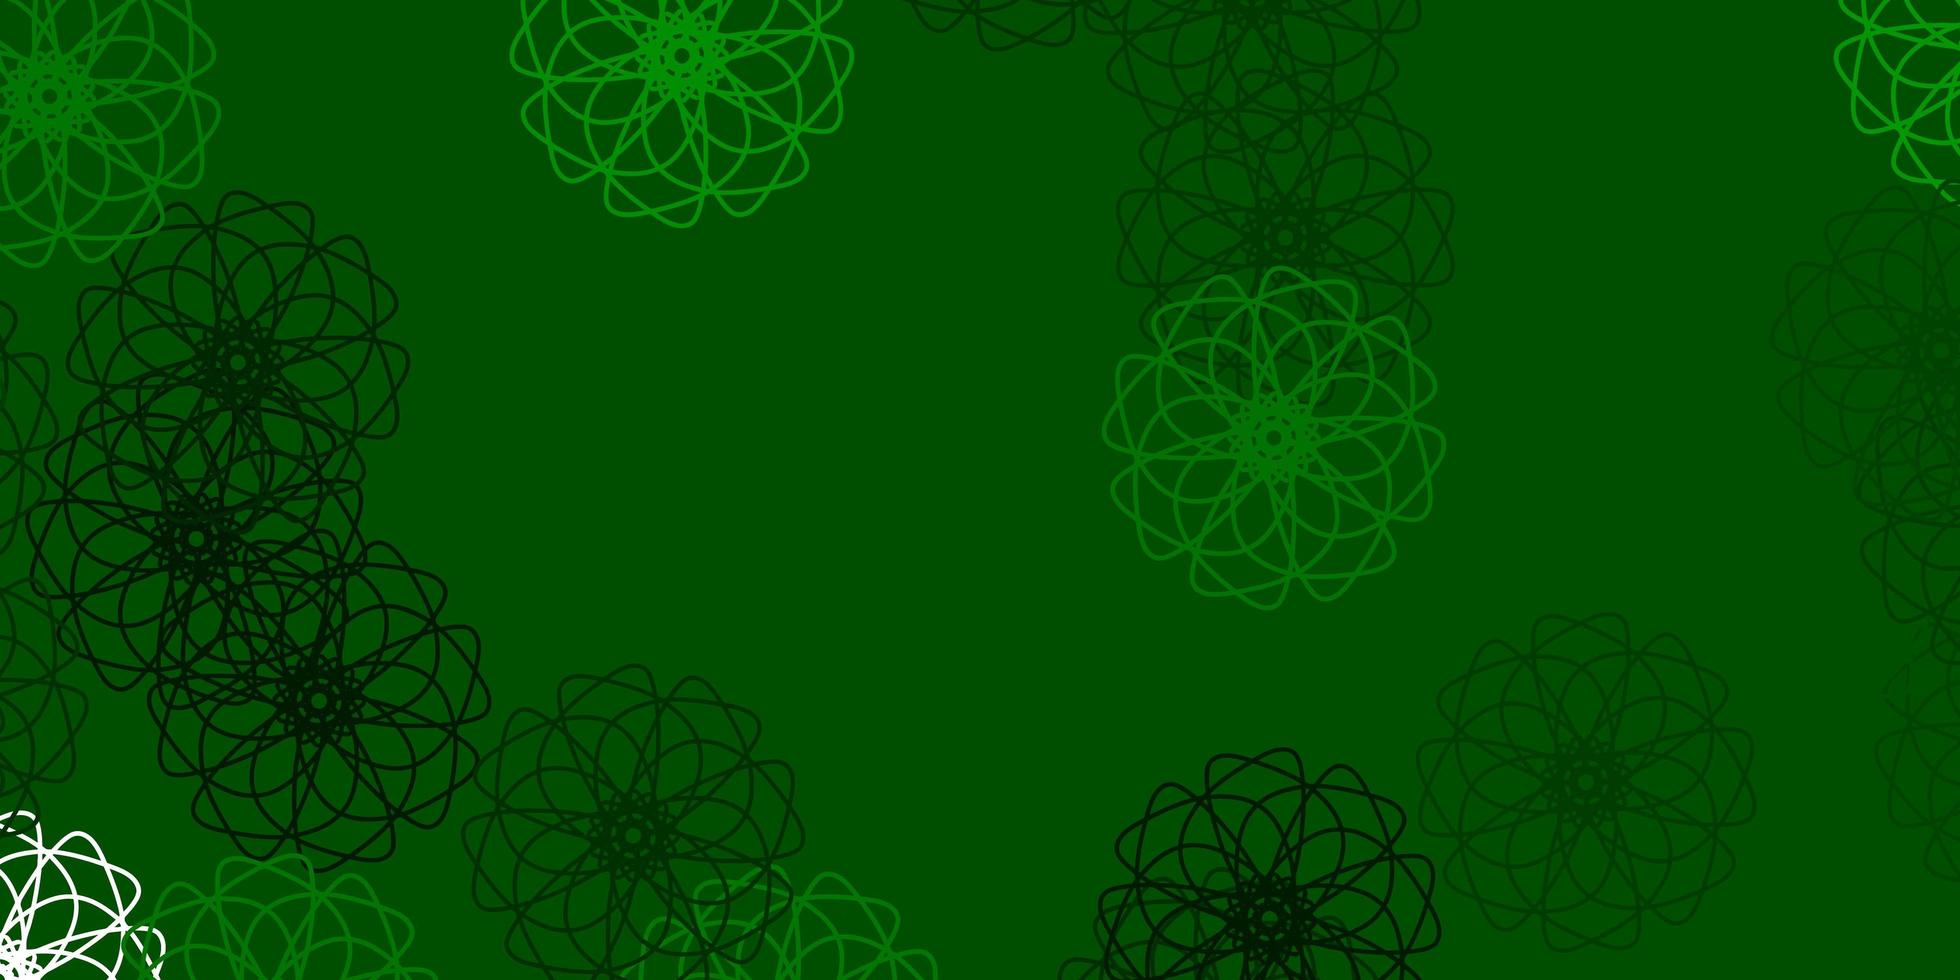 motif de doodle vecteur vert clair avec des fleurs.